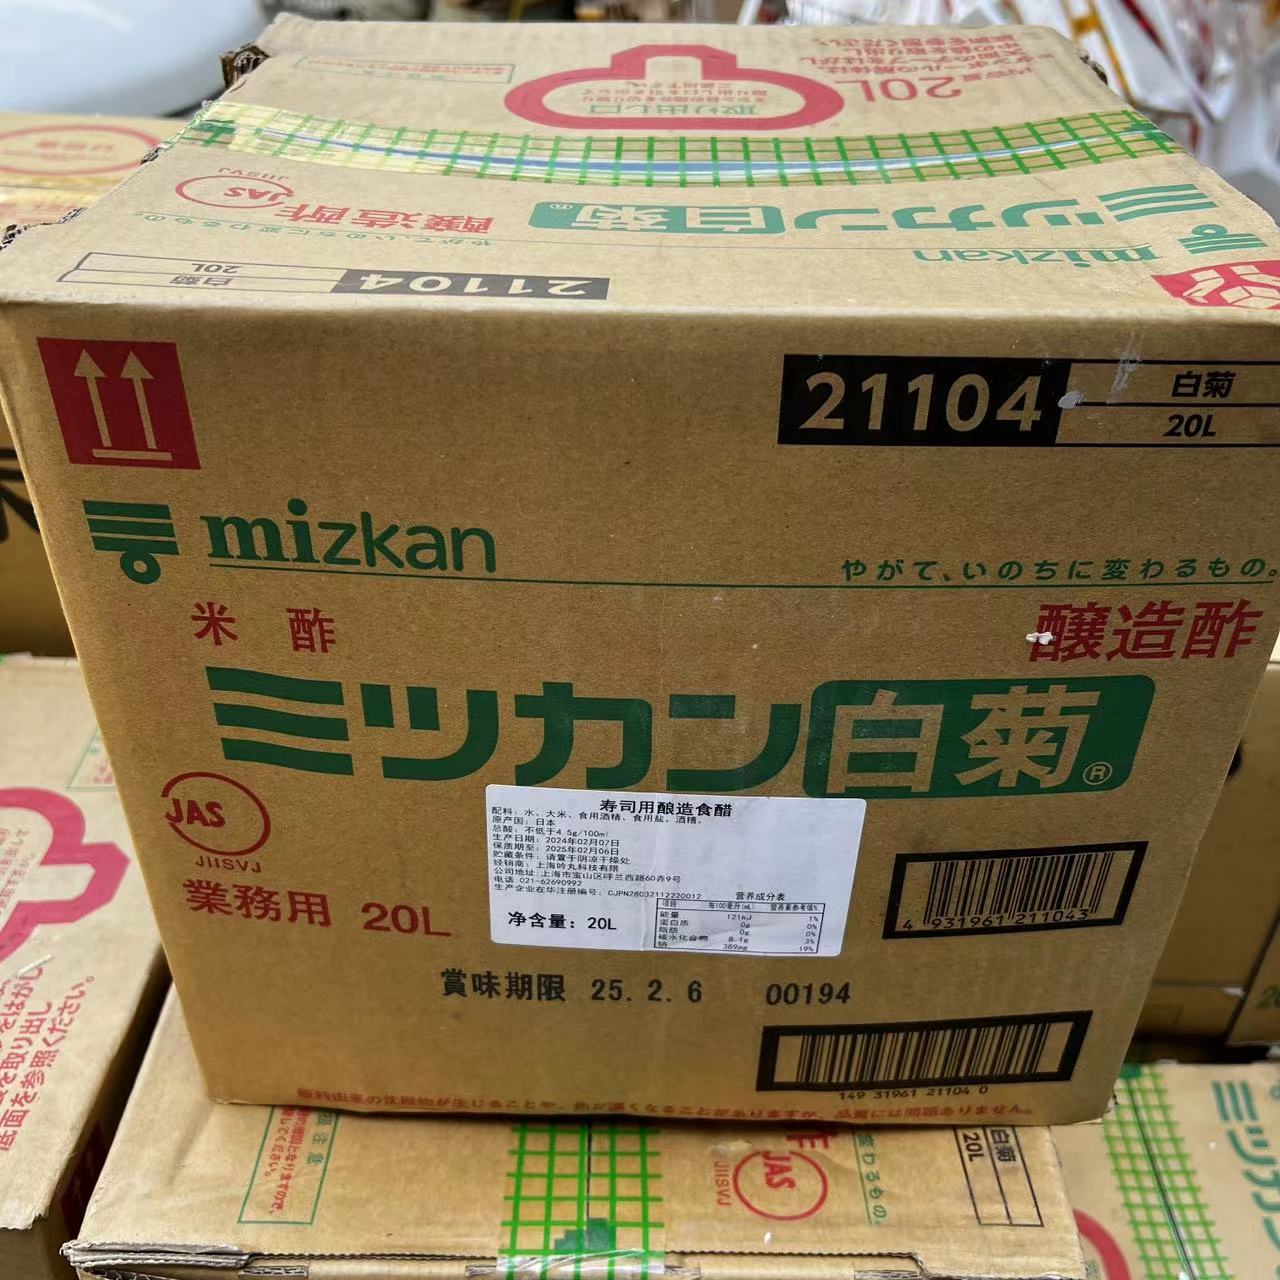 新包装味滋康 料理寿司食材调料日本进口散装酿造白菊醋寿司醋20L